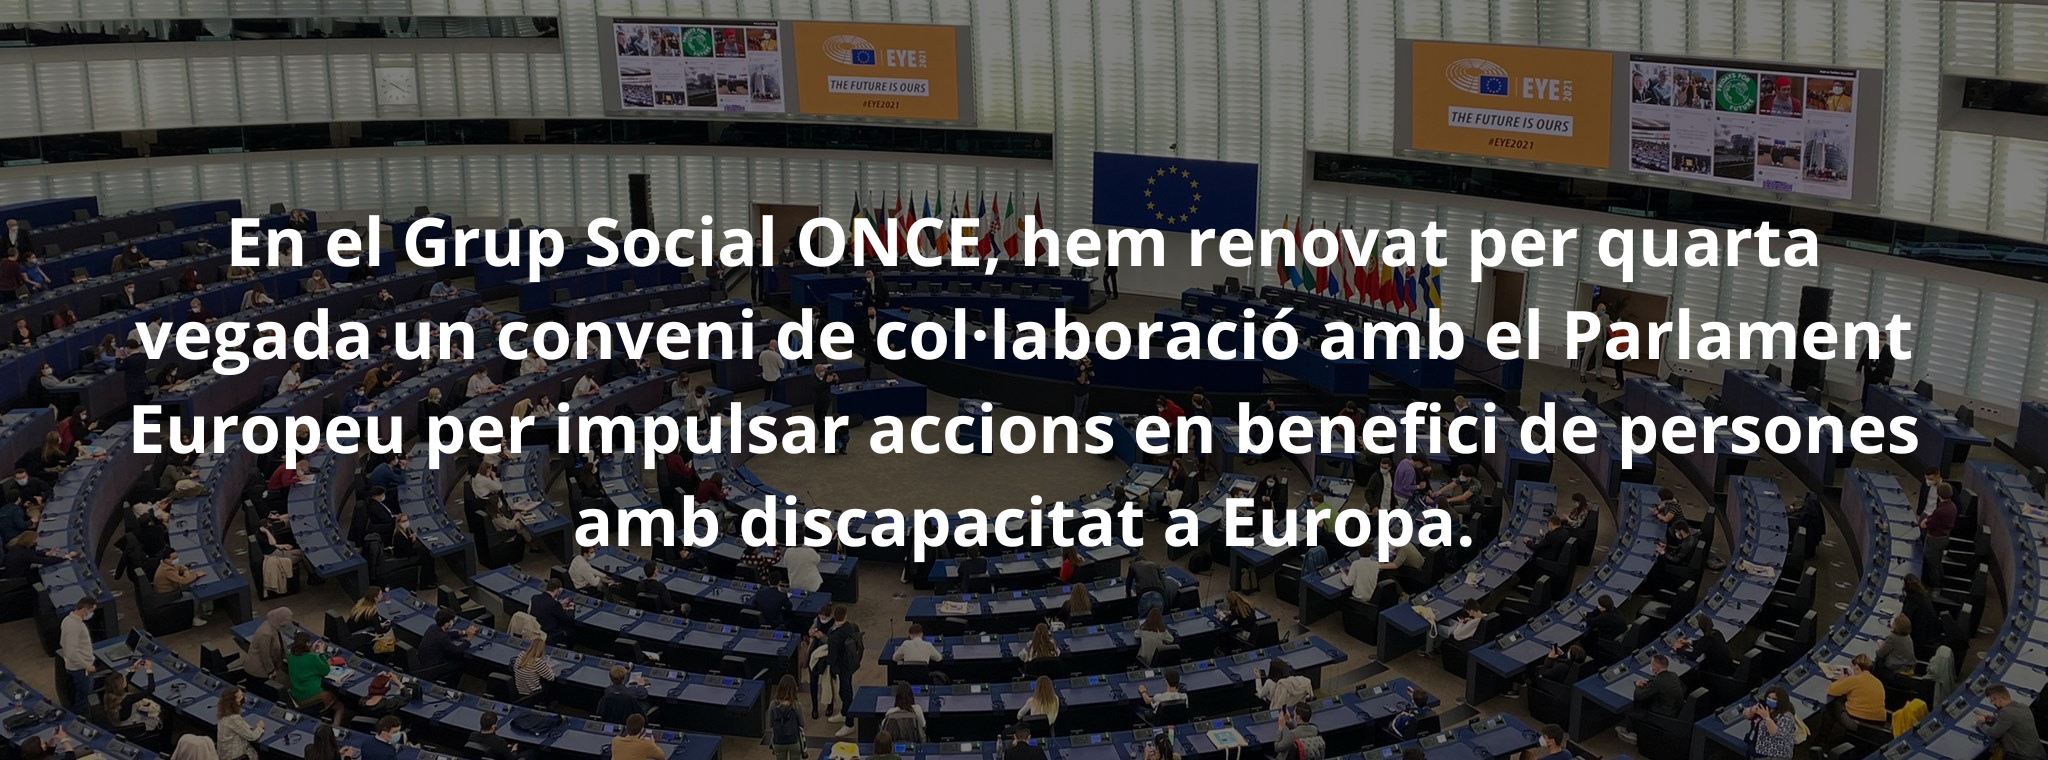 En el Grup Social ONCE, hem renovat per quarta vegada un conveni de col·laboració amb el Parlament Europeu per impulsar accions en benefici de persones amb discapacitat a Europa.